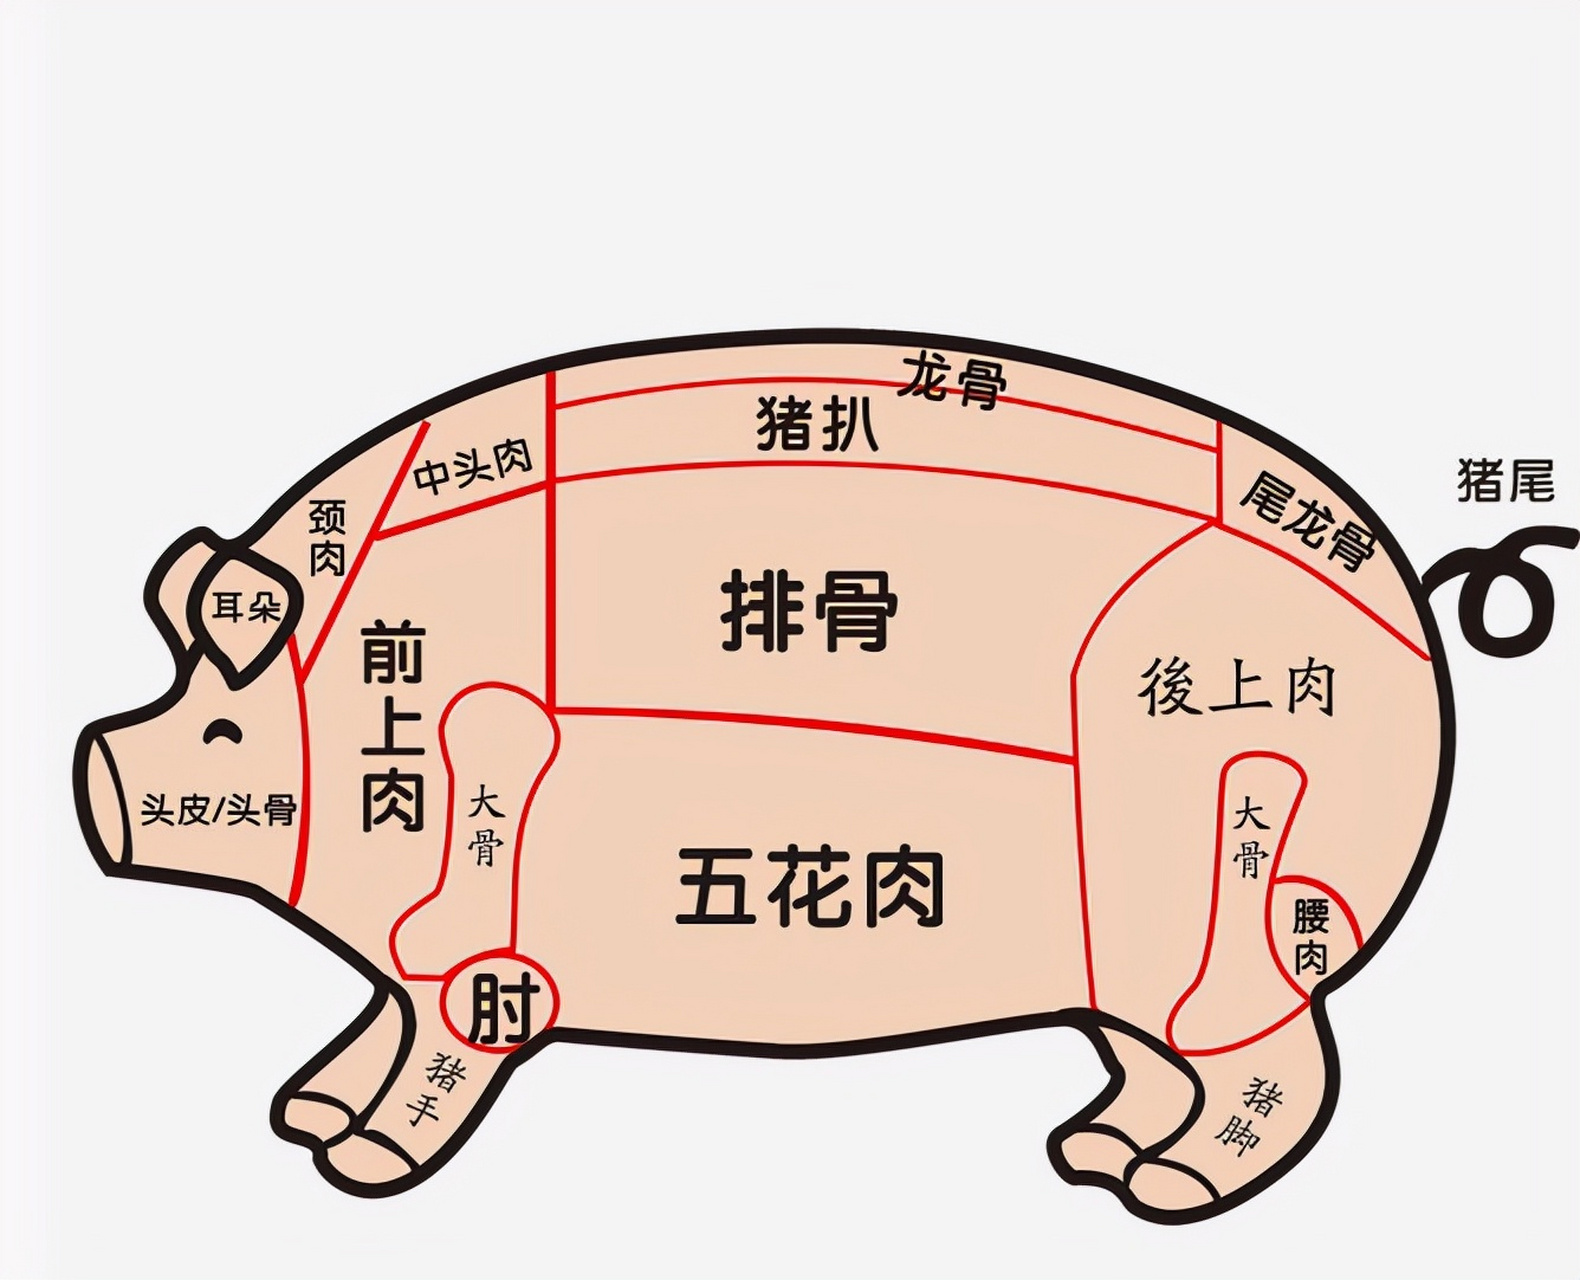 猪排骨分类图解 部位图片